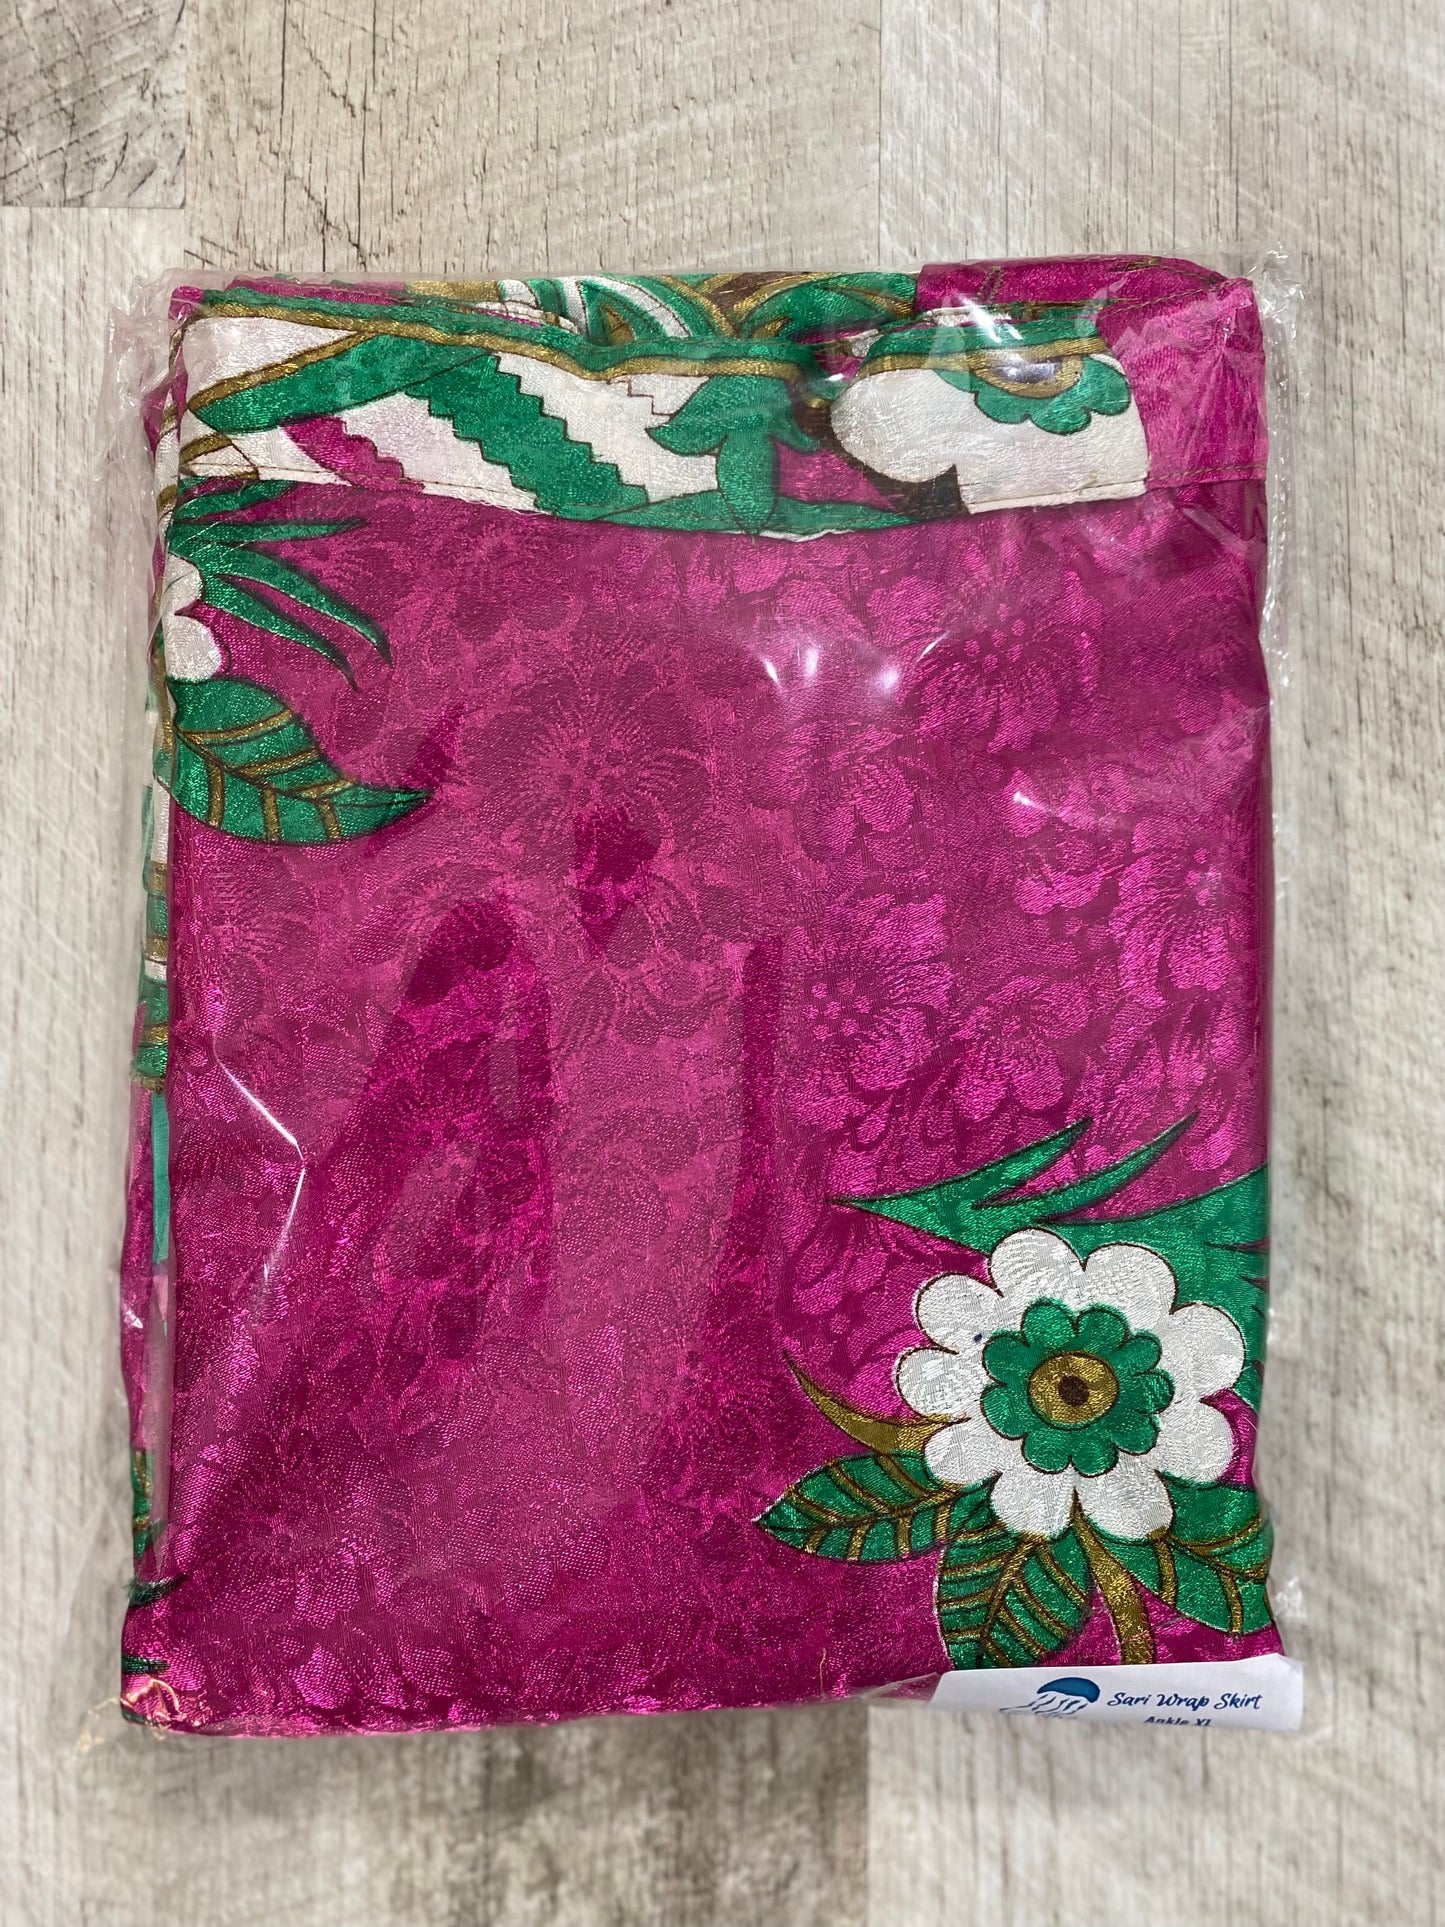 Mystery Sari Wrap Skirt 19 - Ankle Length - XL Size